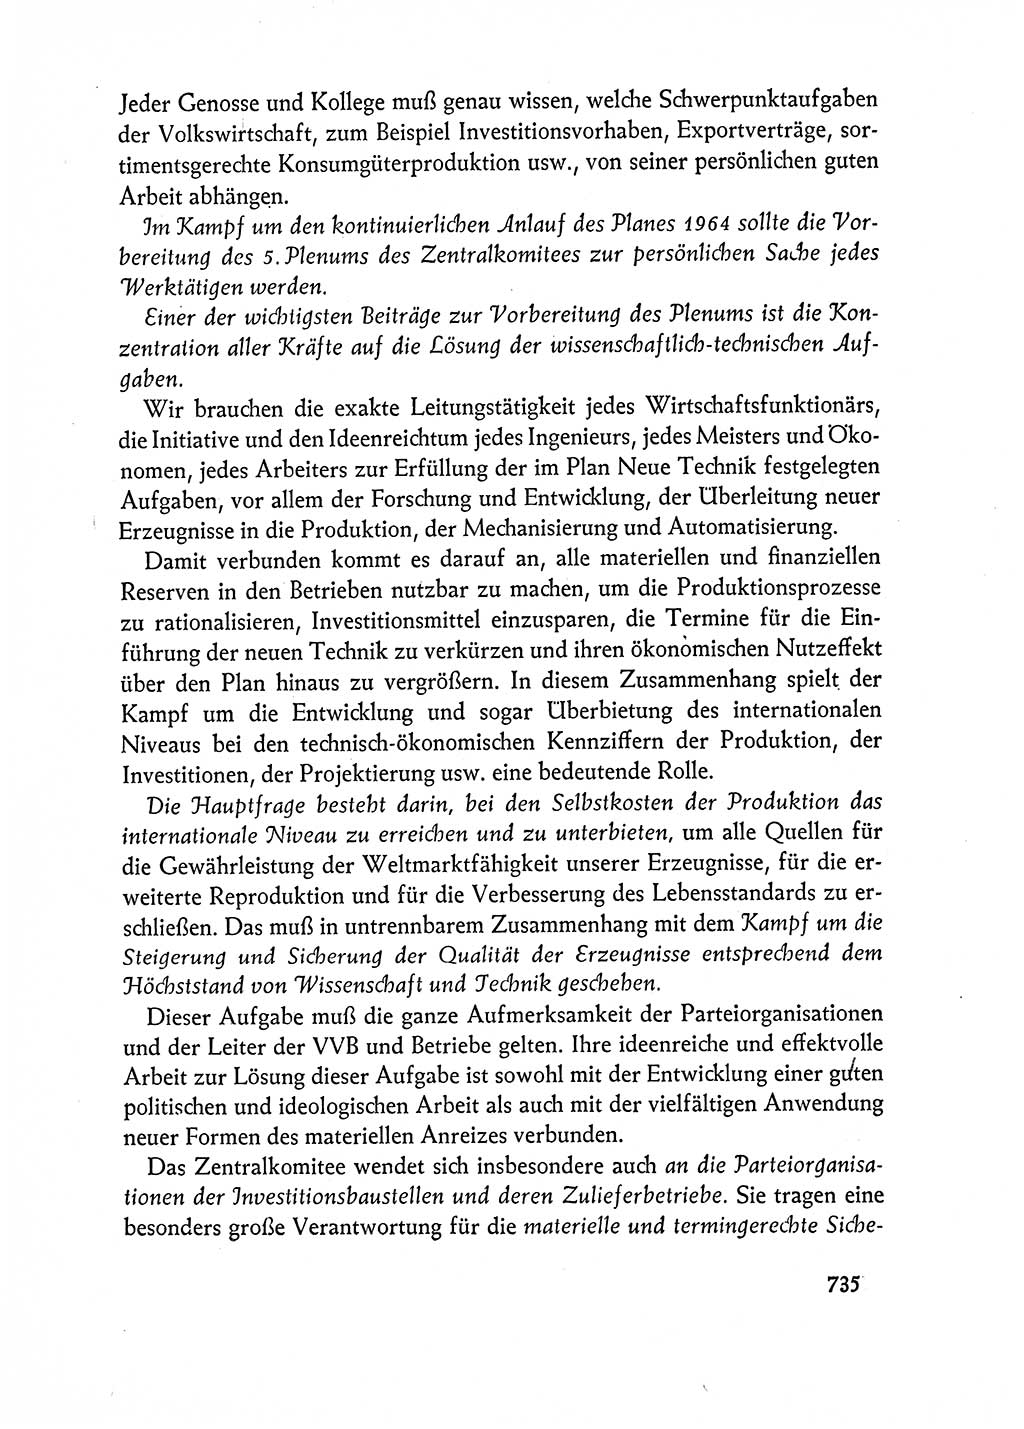 Dokumente der Sozialistischen Einheitspartei Deutschlands (SED) [Deutsche Demokratische Republik (DDR)] 1962-1963, Seite 735 (Dok. SED DDR 1962-1963, S. 735)